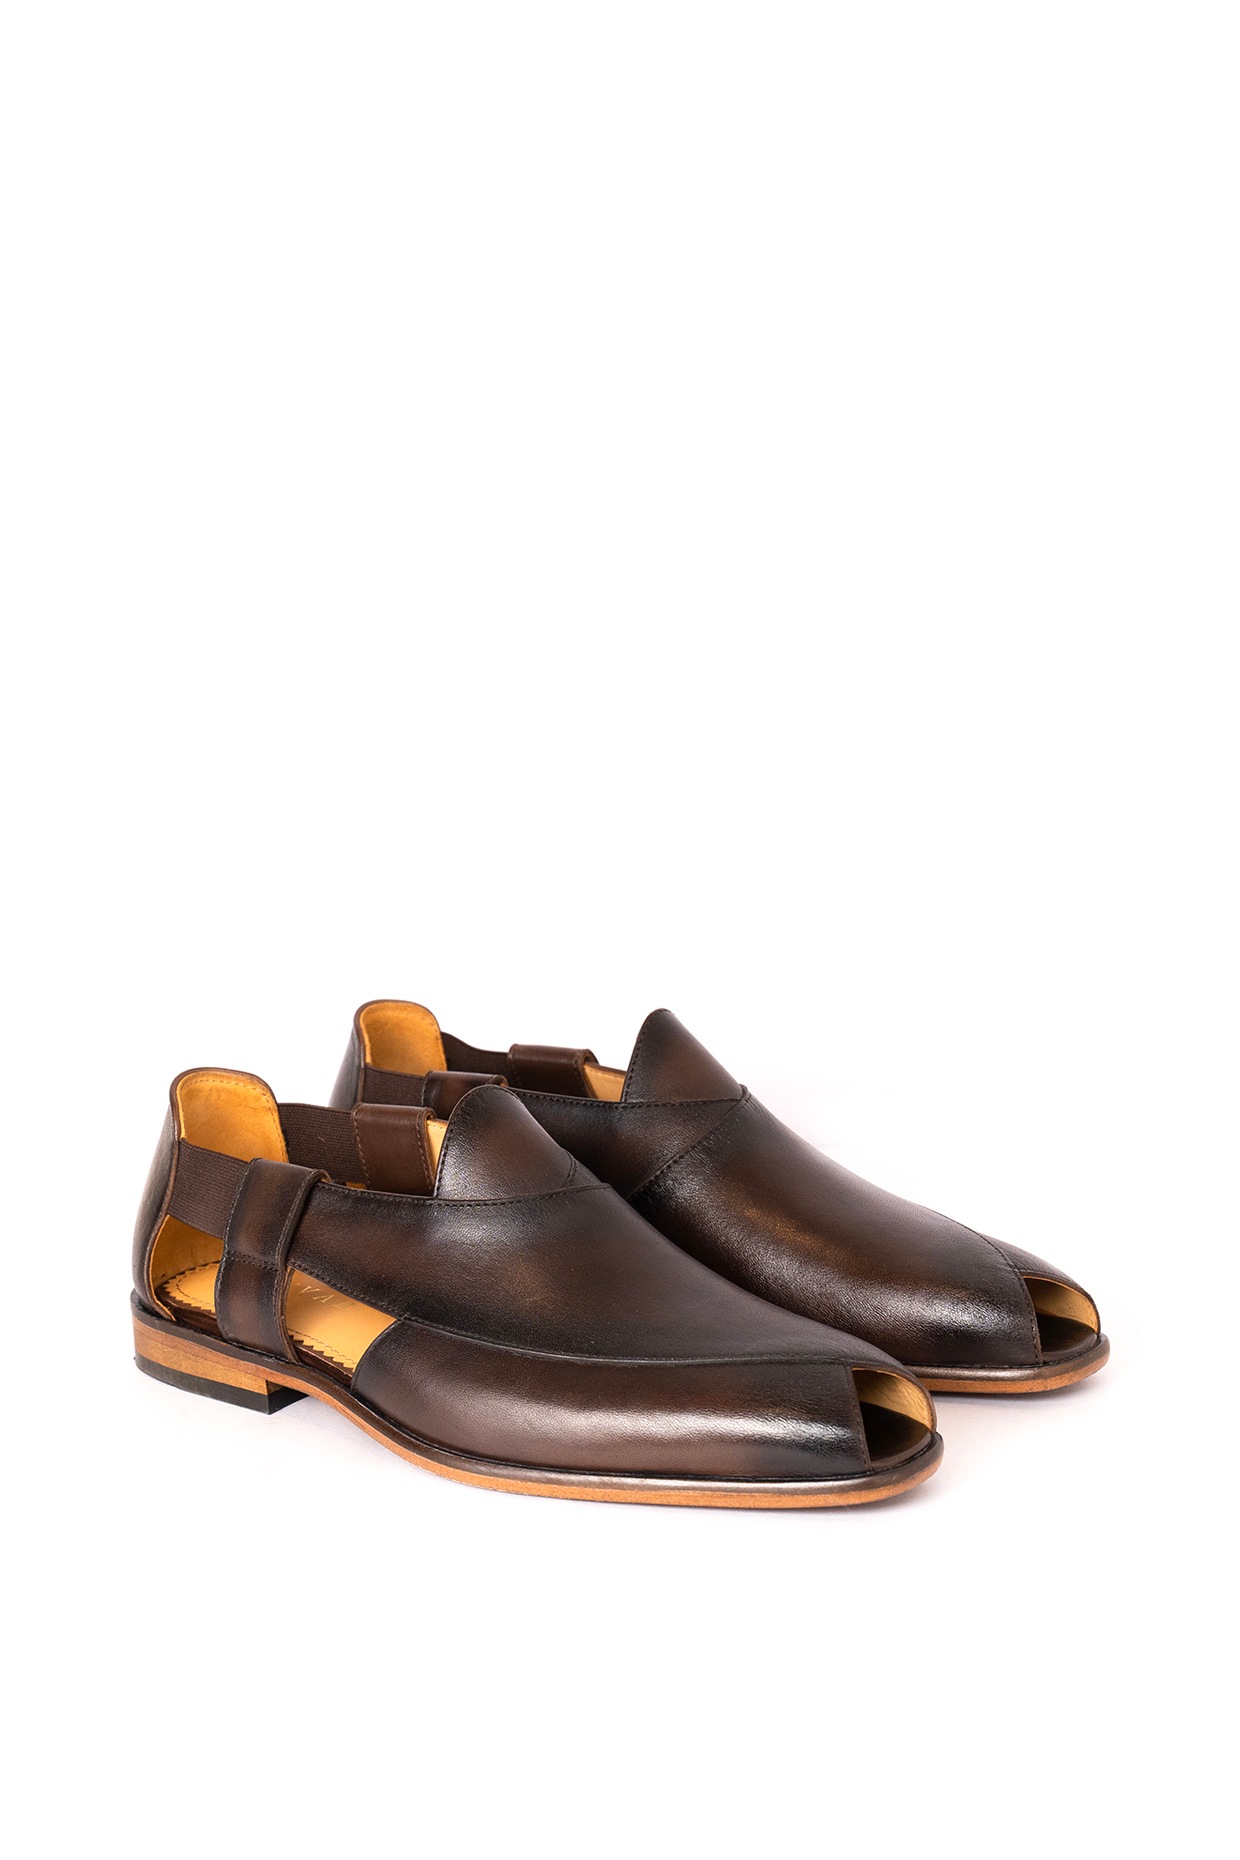 Peshawari Sandal for Men - Burgundy (numeric_6) : Amazon.in: Fashion